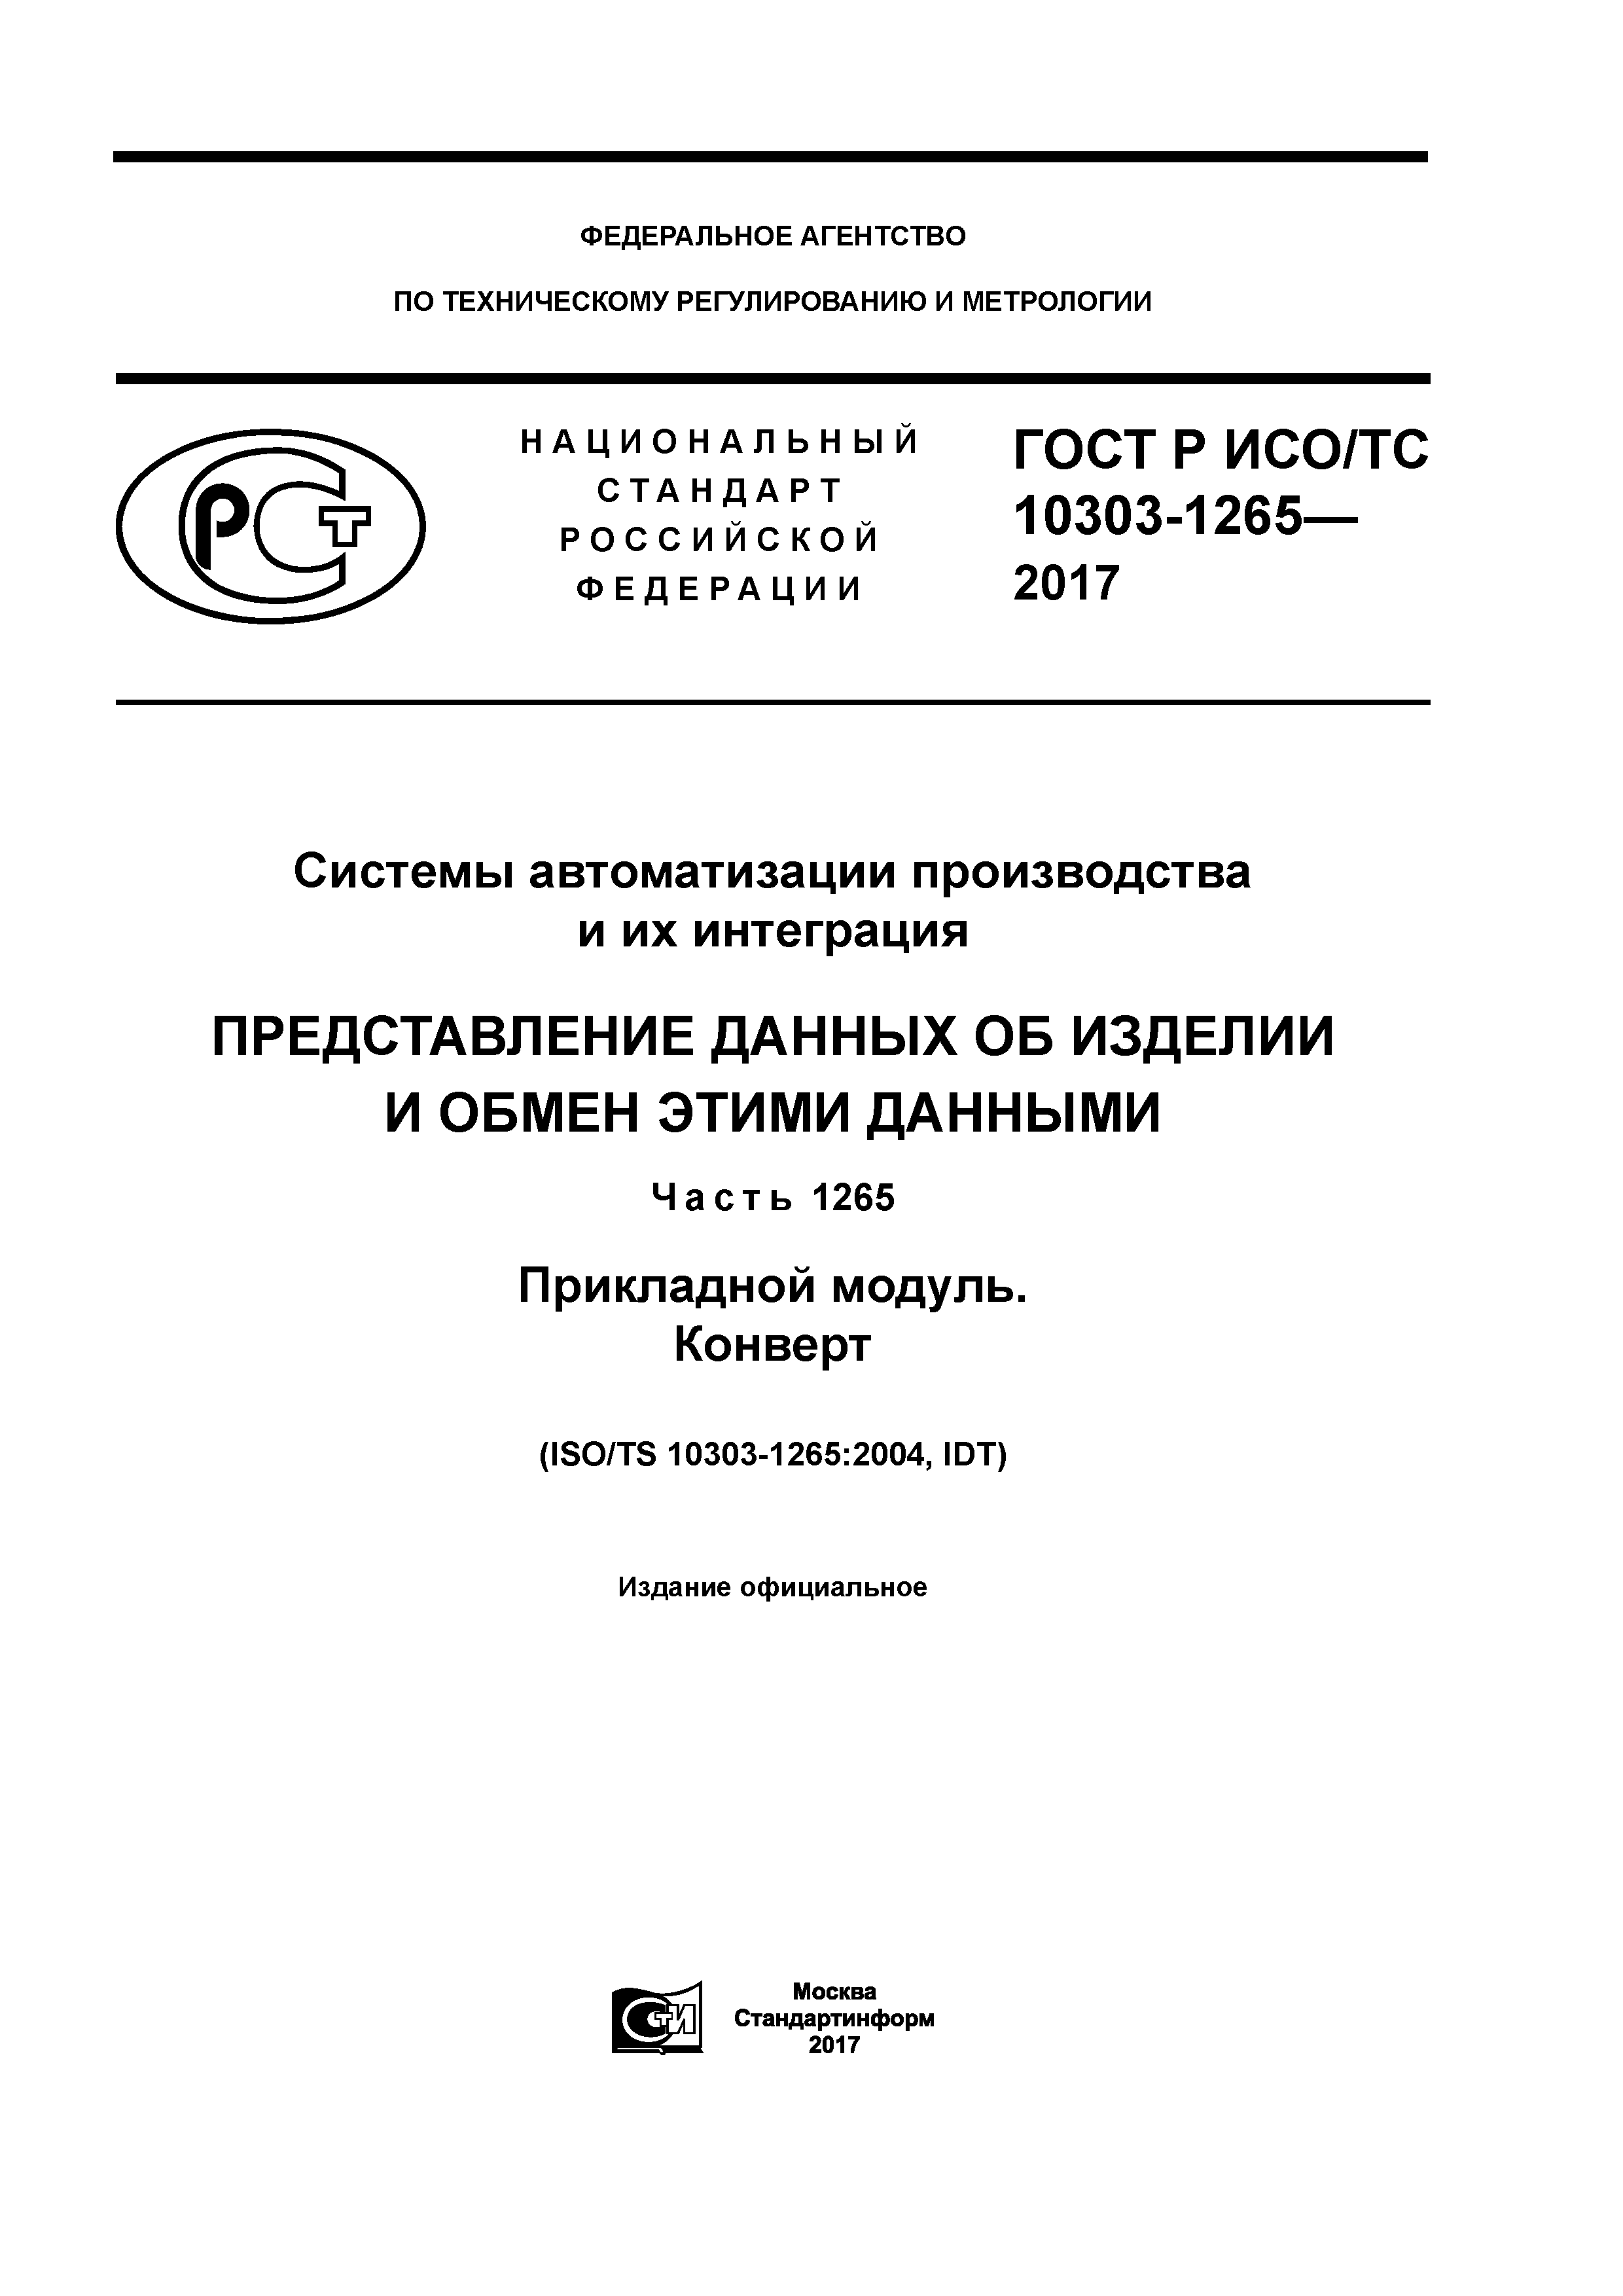 ГОСТ Р ИСО/ТС 10303-1265-2017